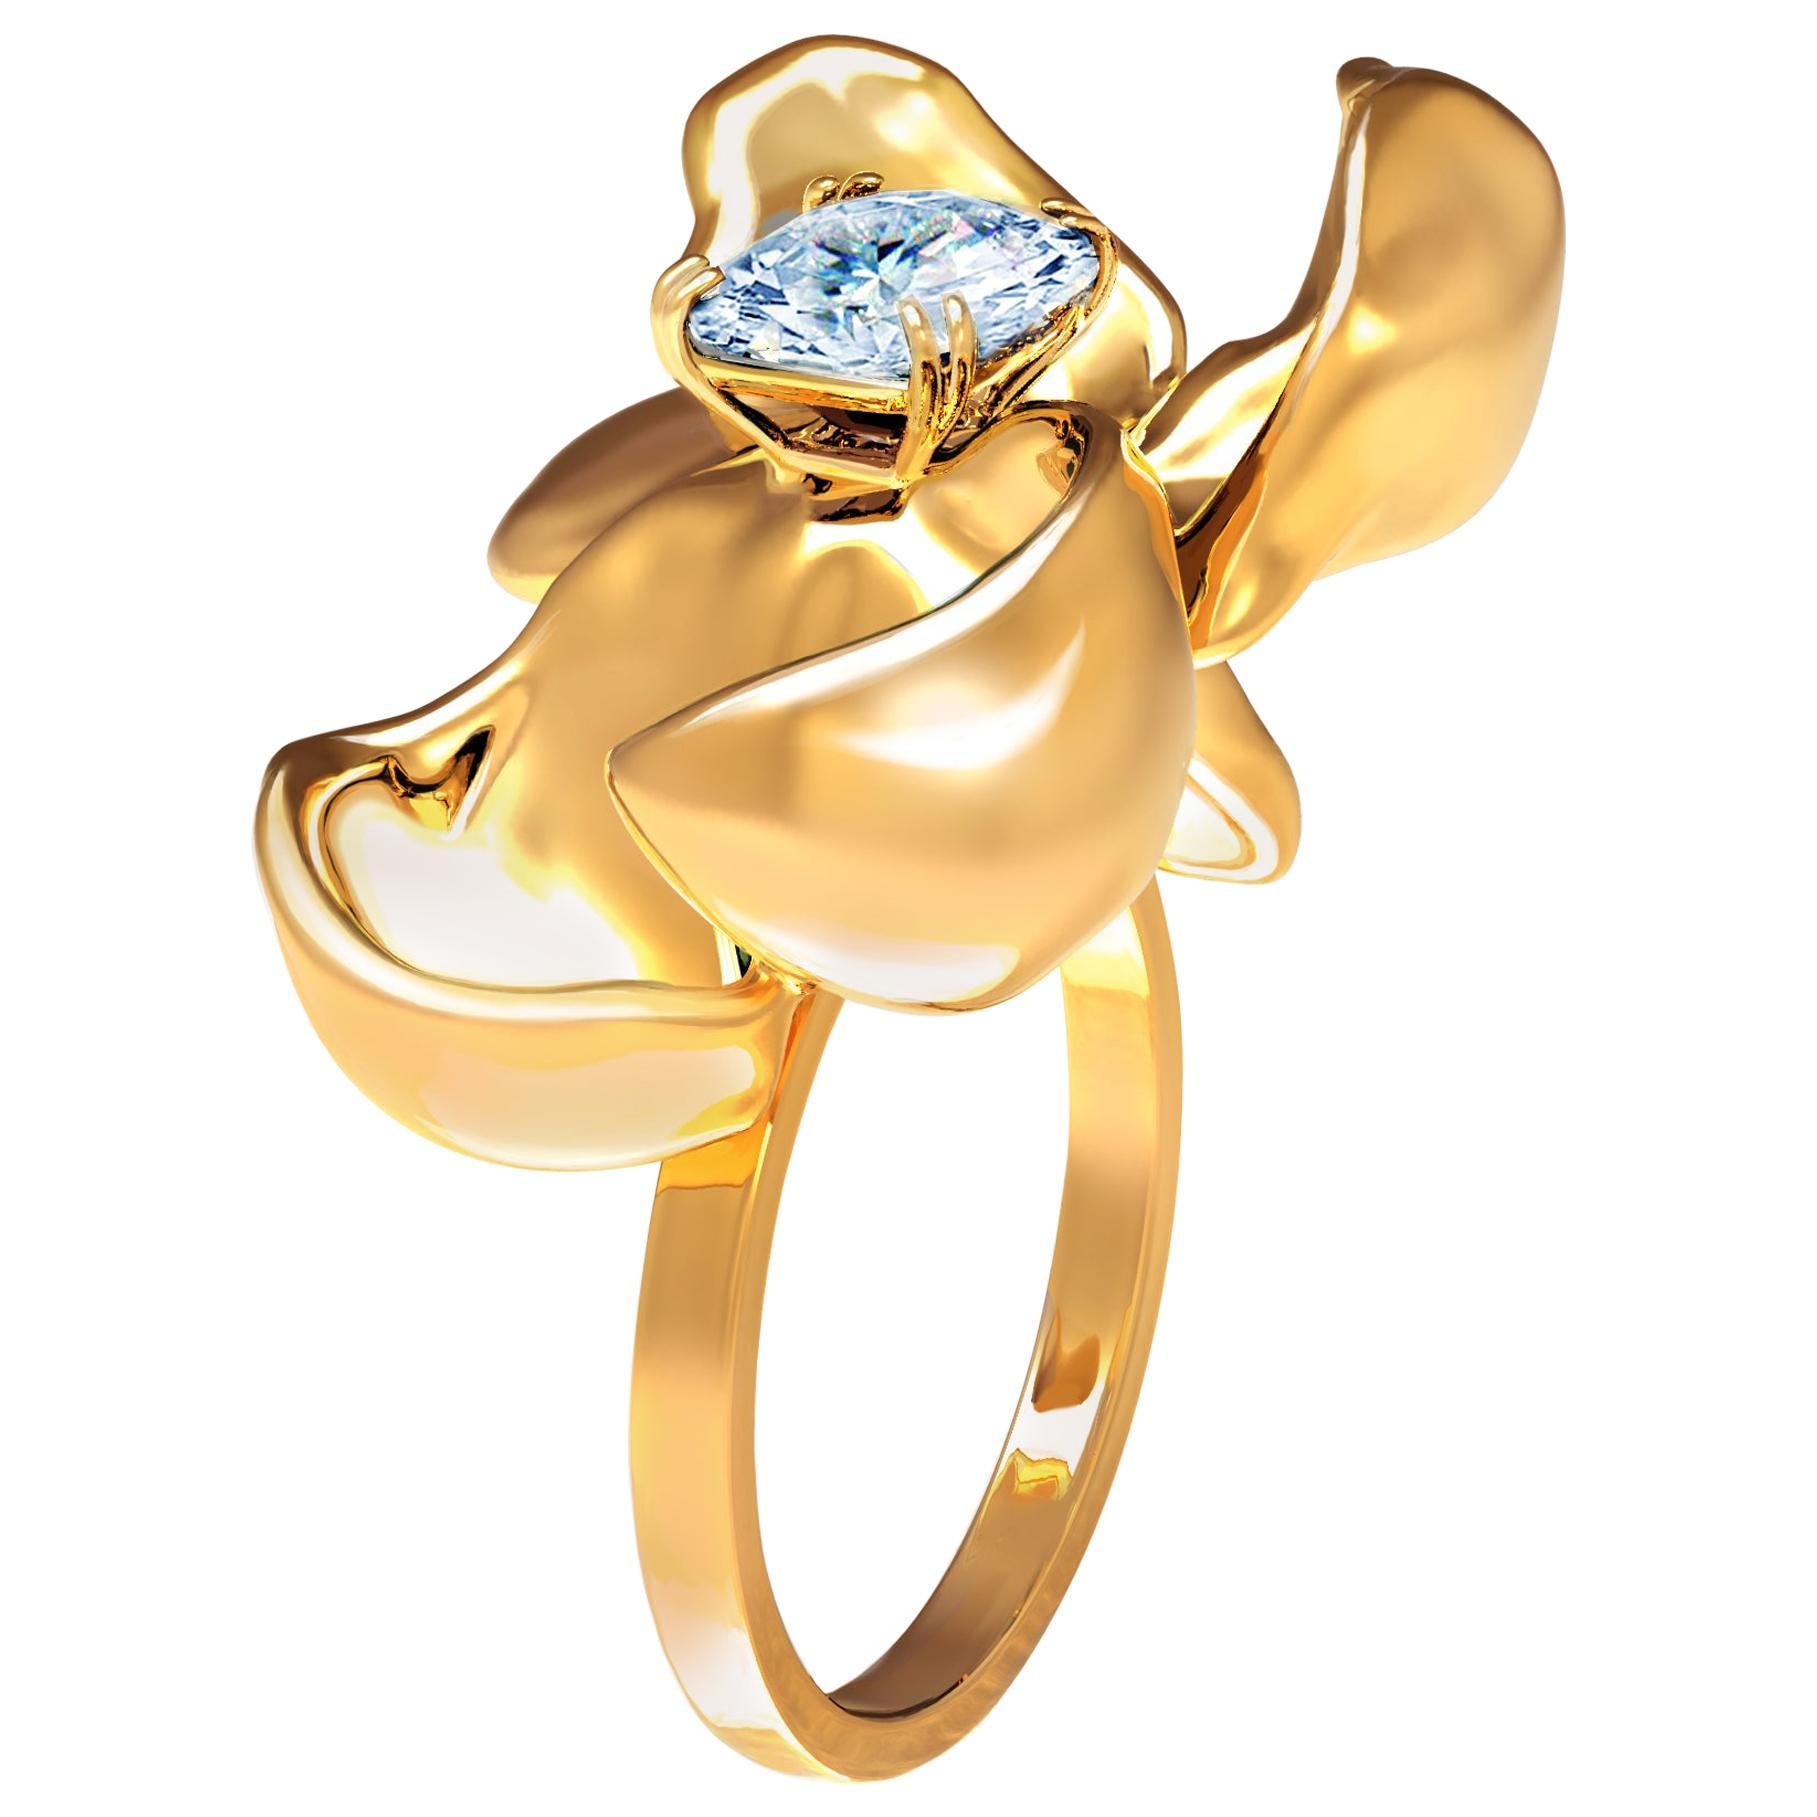 Bague de fiançailles contemporaine en or jaune avec saphir bleu clair